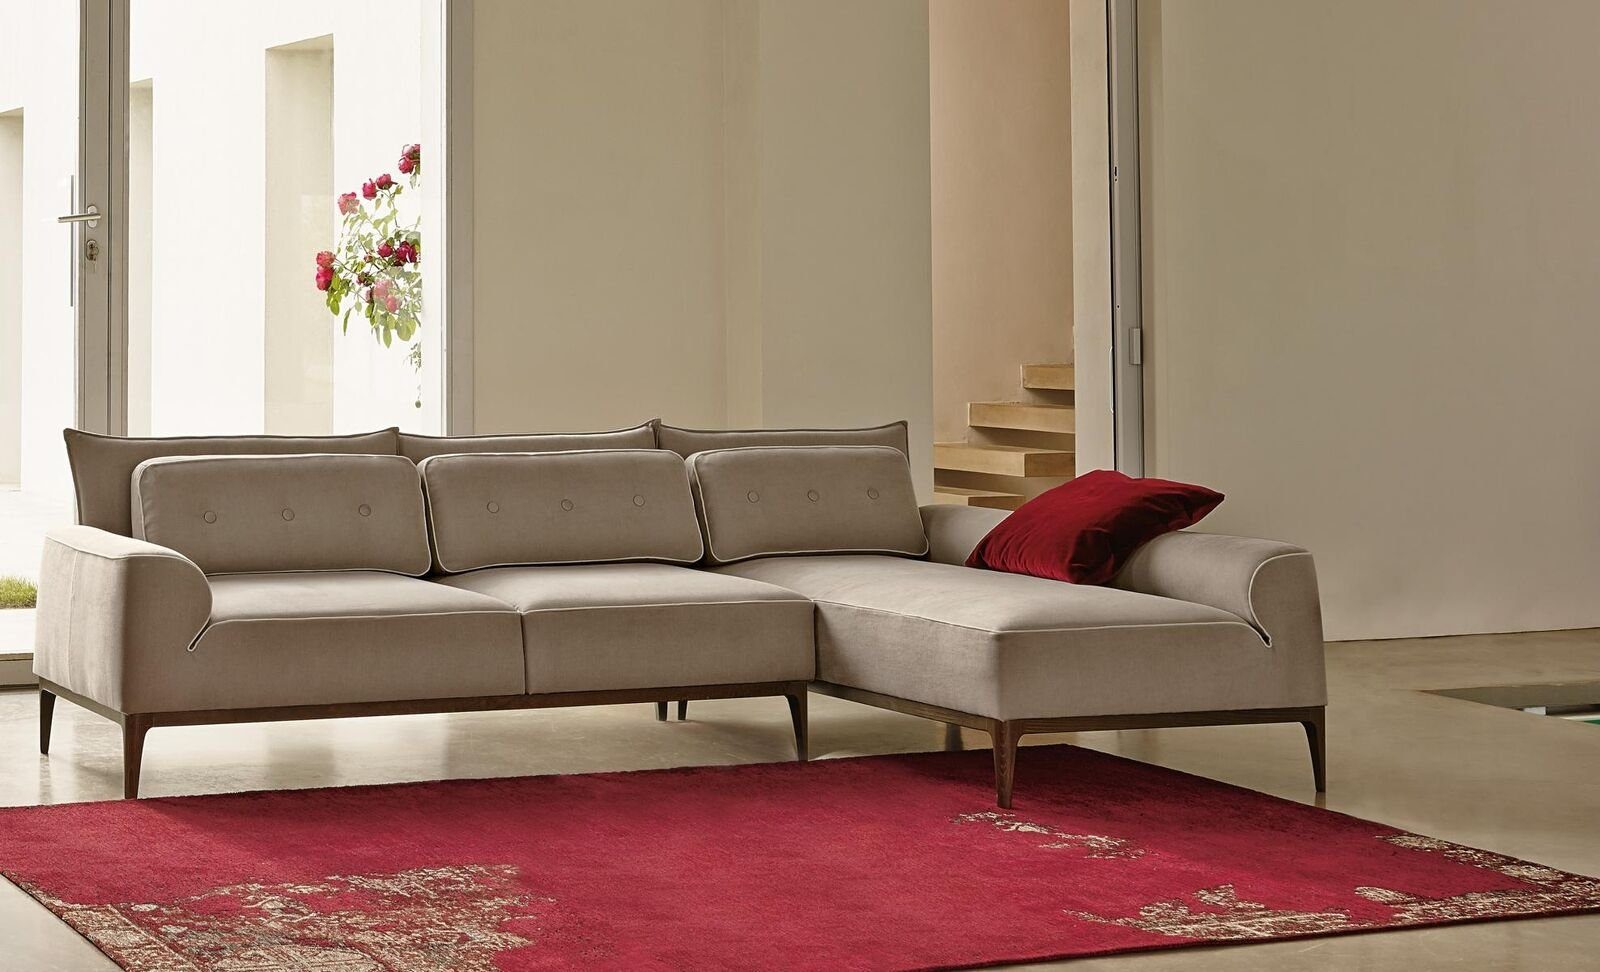 JVmoebel Ecksofa Ecksofa L Form Möbel Sofa Luxus Couch Grau Möbel Design Wohnzimmer